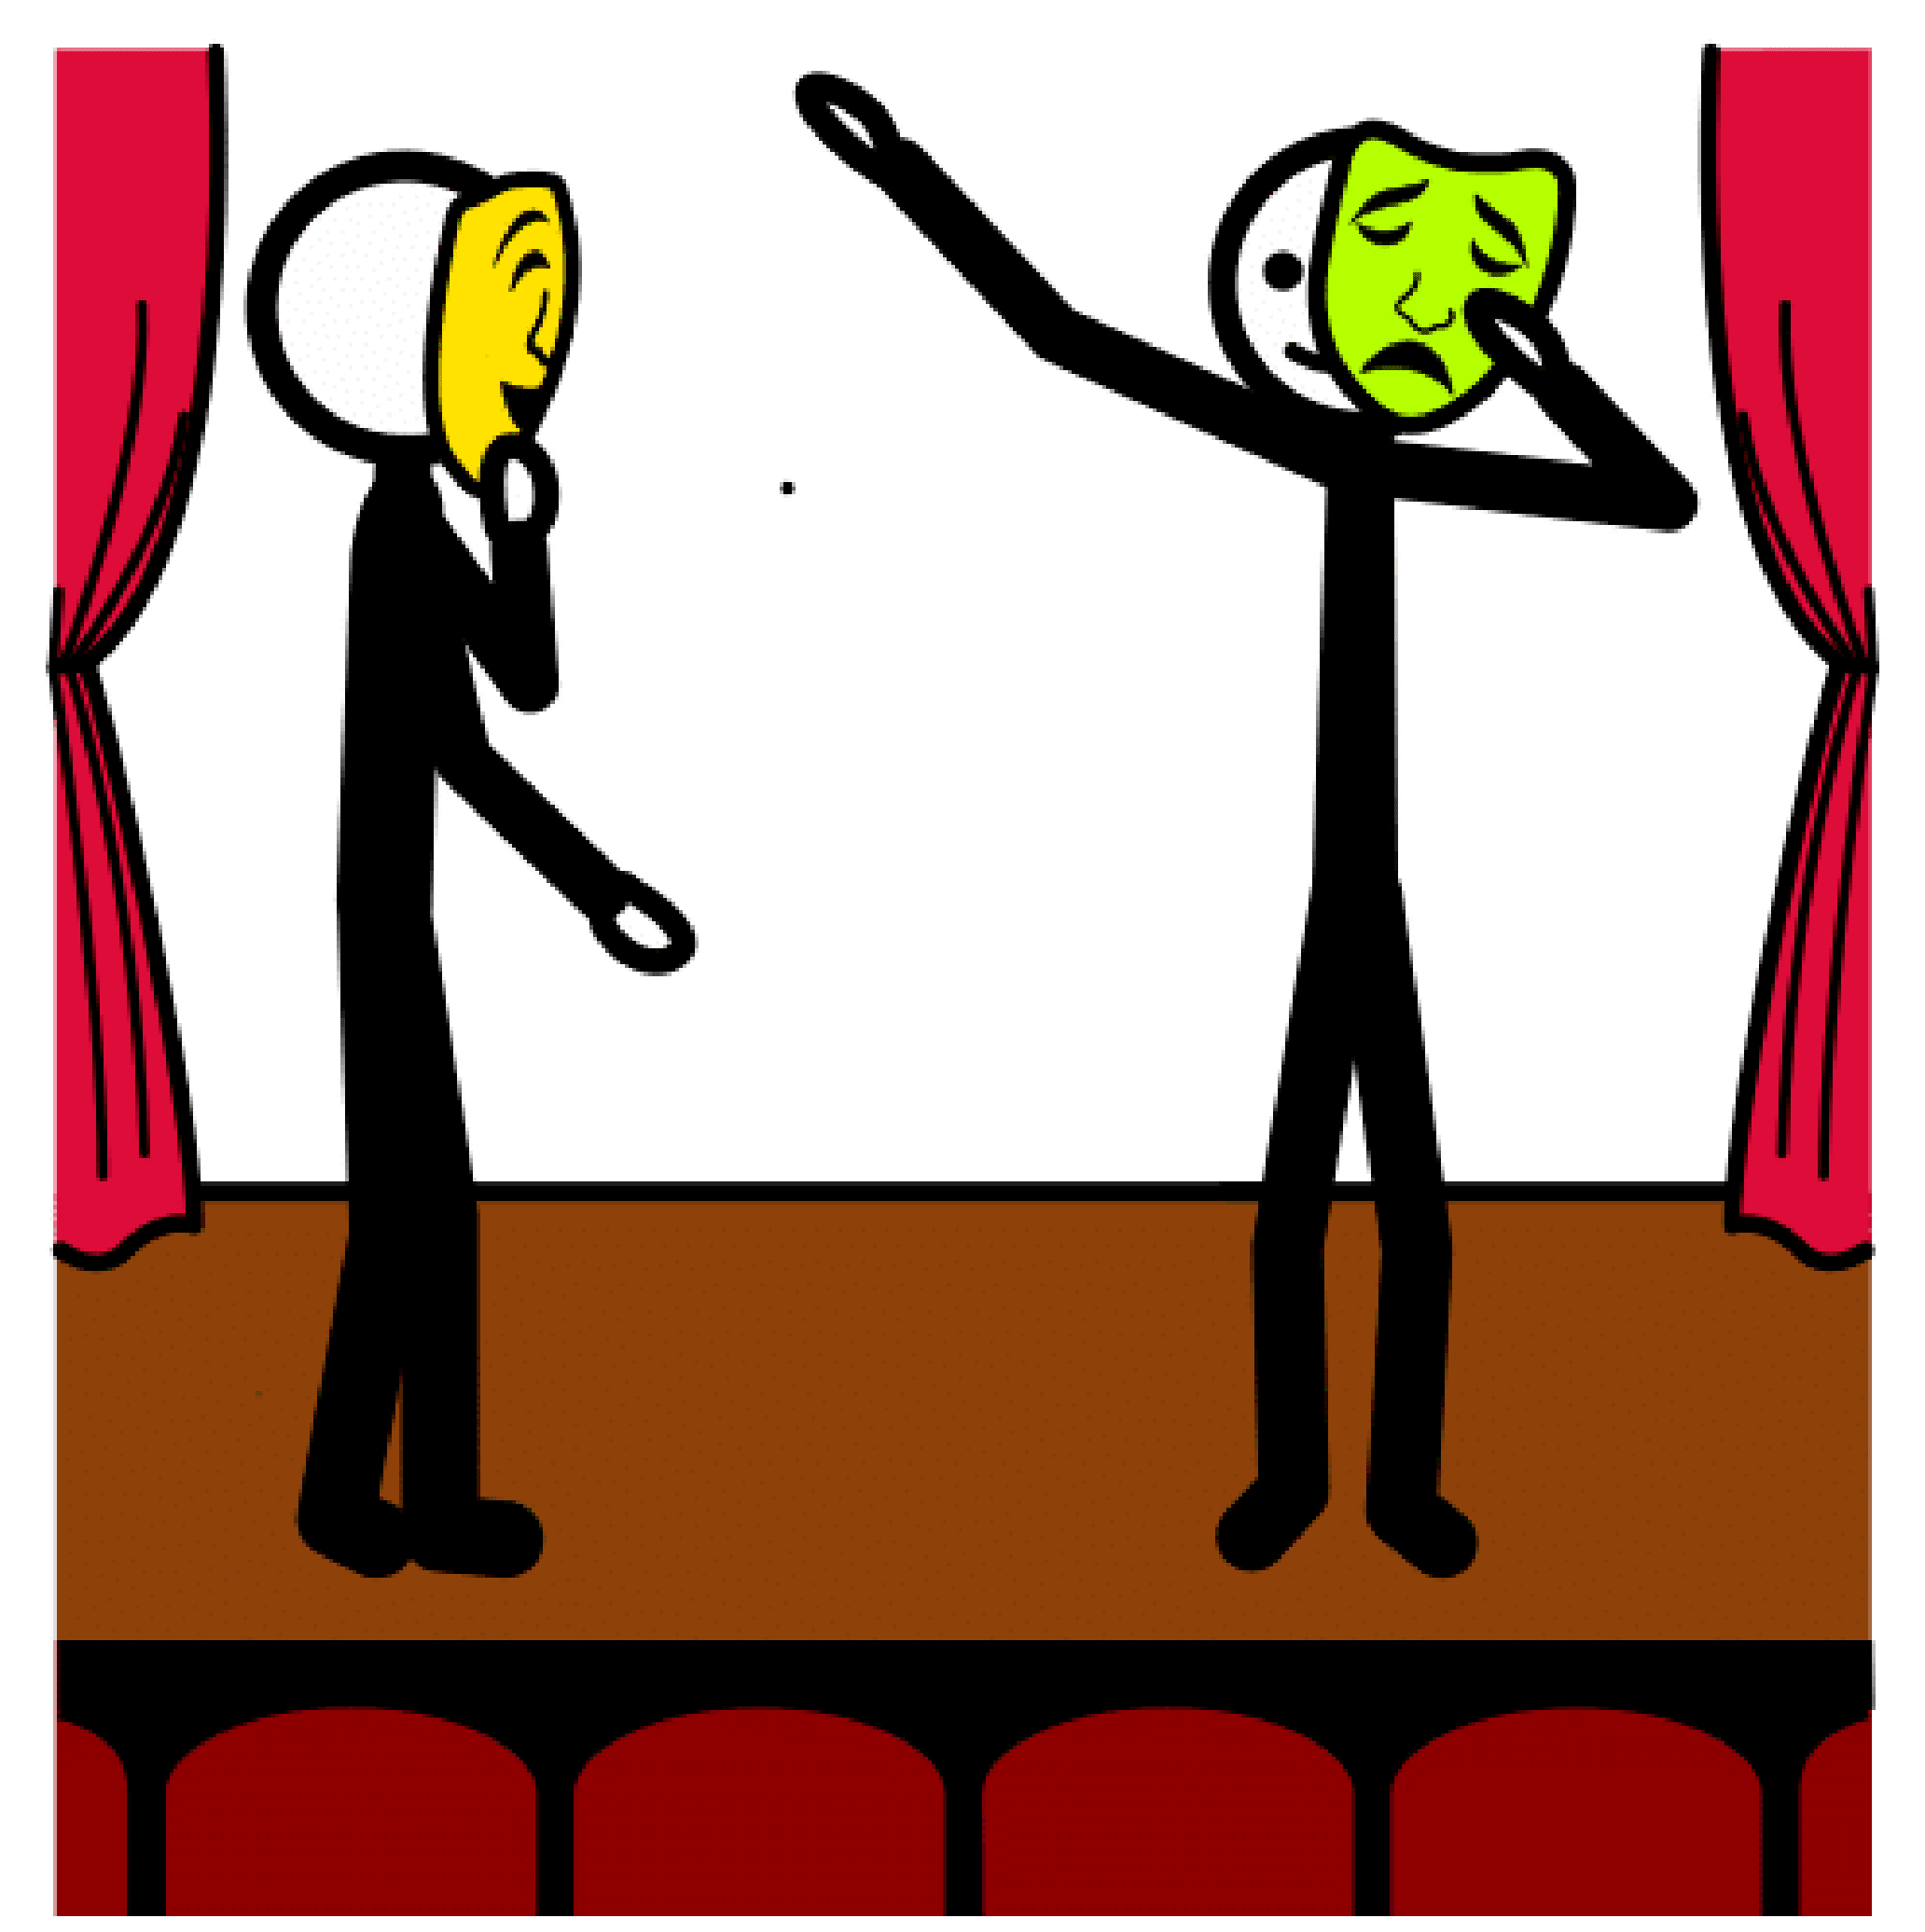 Dos personas, en un escenario, actúan. La persona de la izquierda lleva máscara amarilla,la persona de la derecha lleva máscara verde.